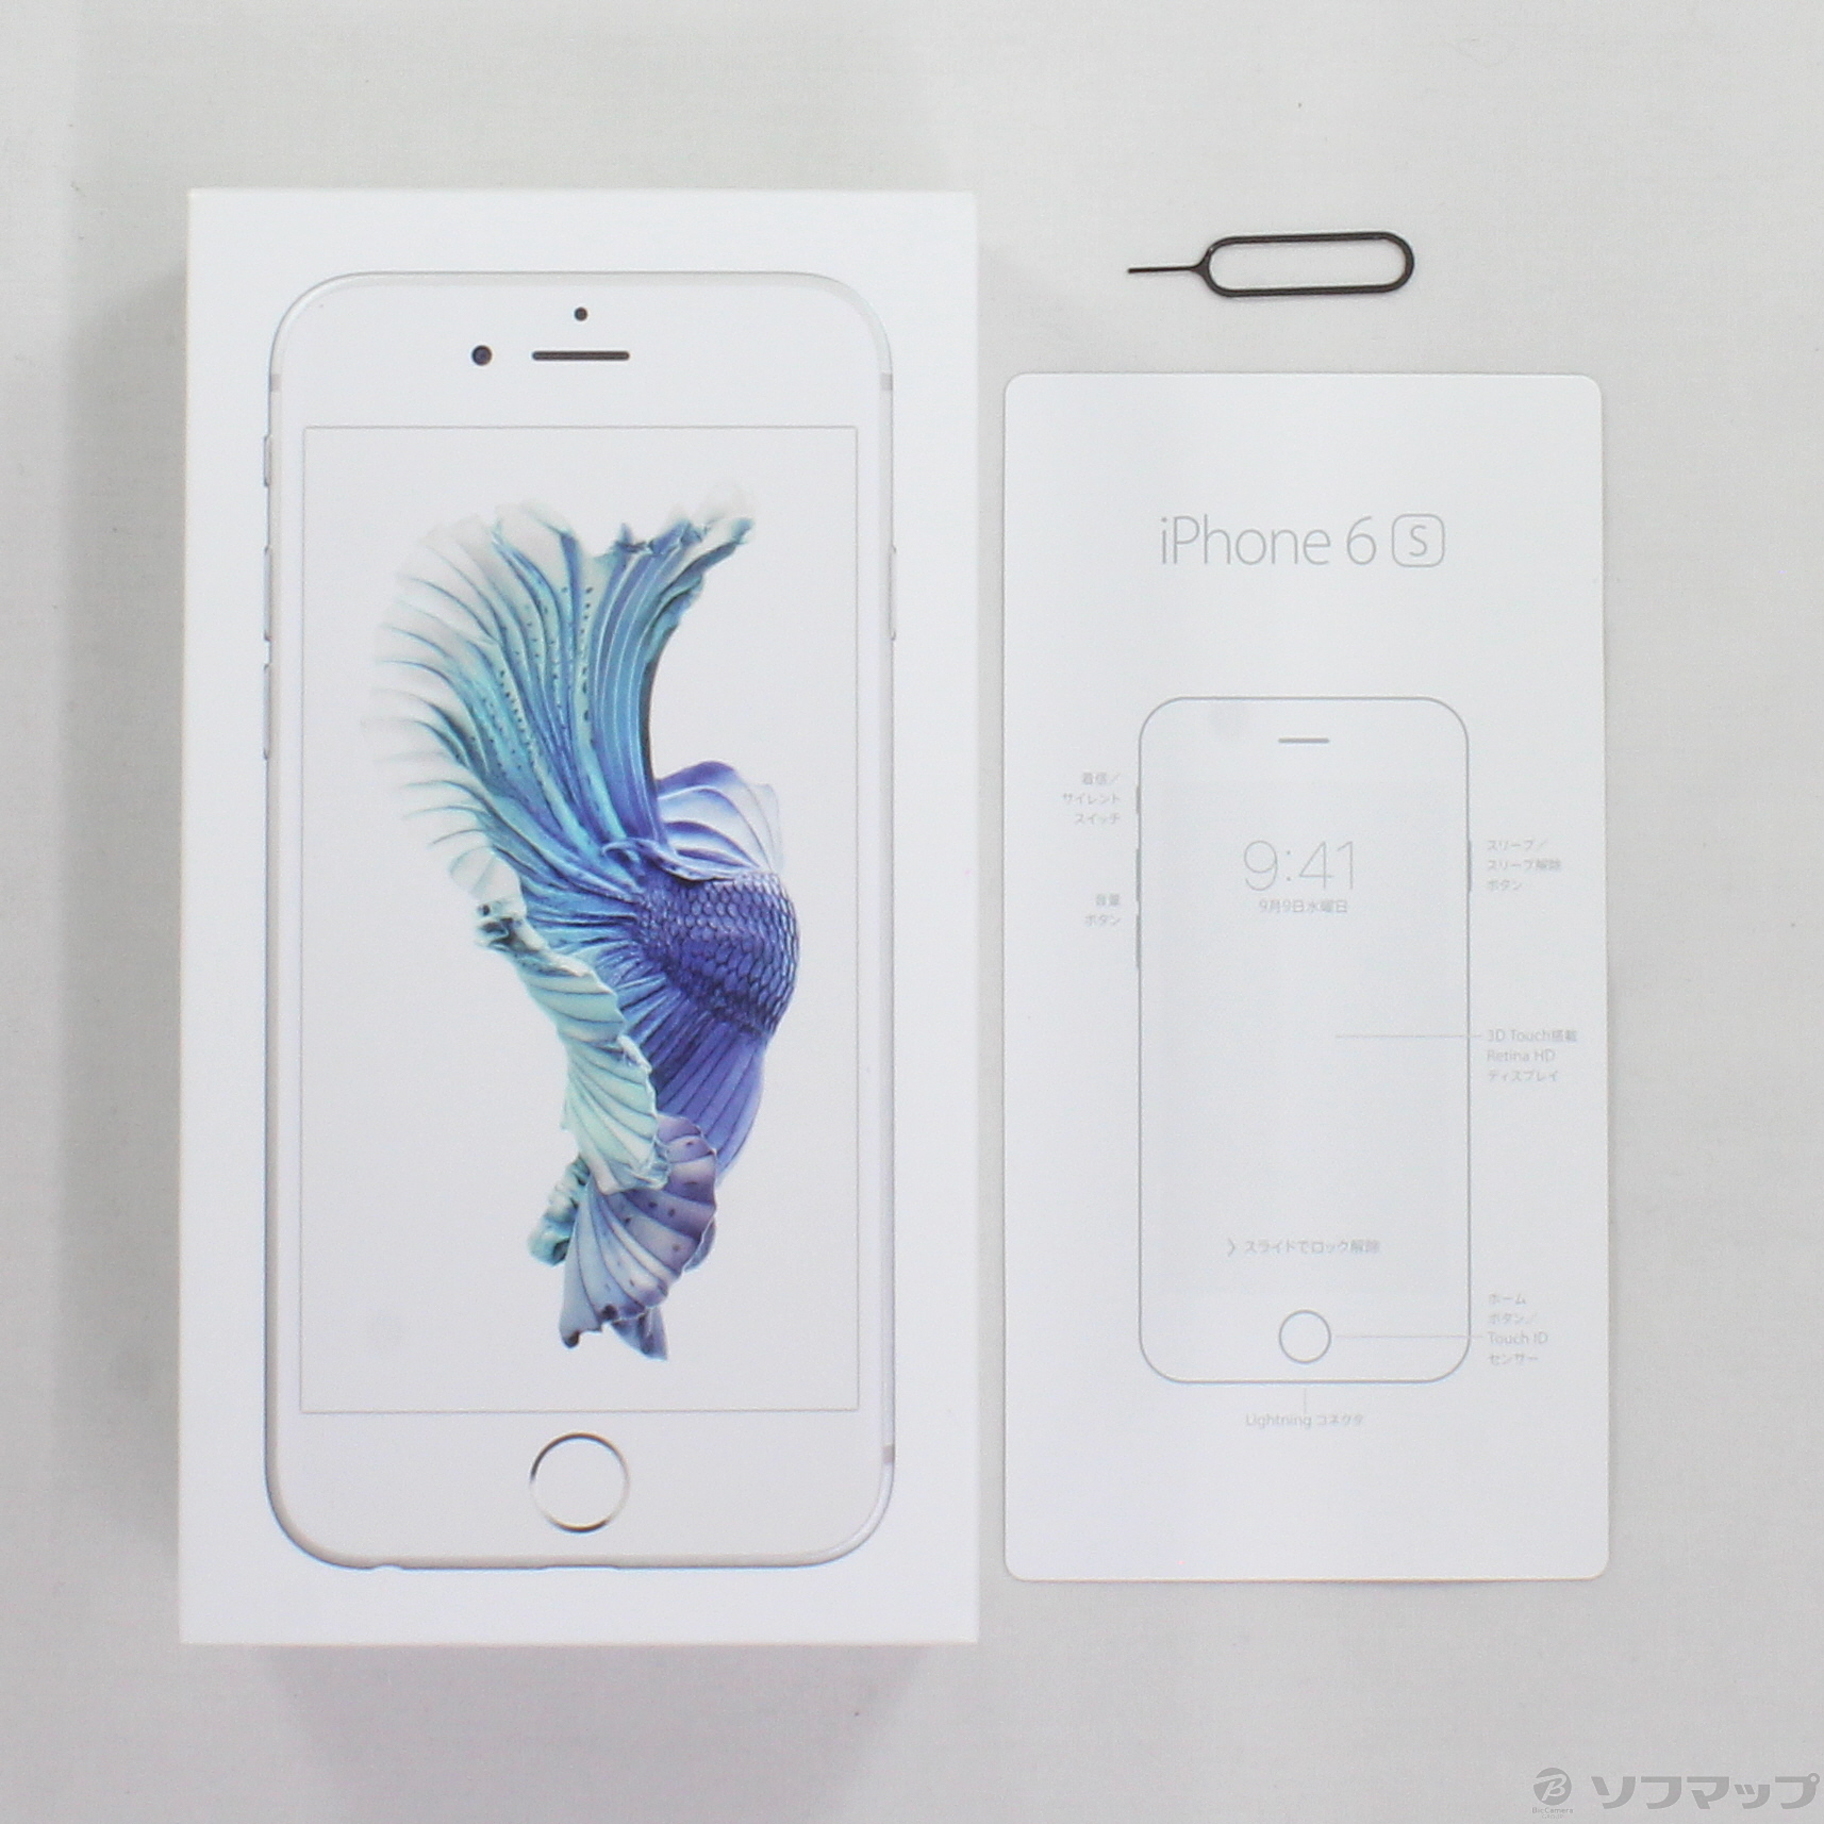 iPhone 6s Silver 16 GB SIMフリー - 携帯電話